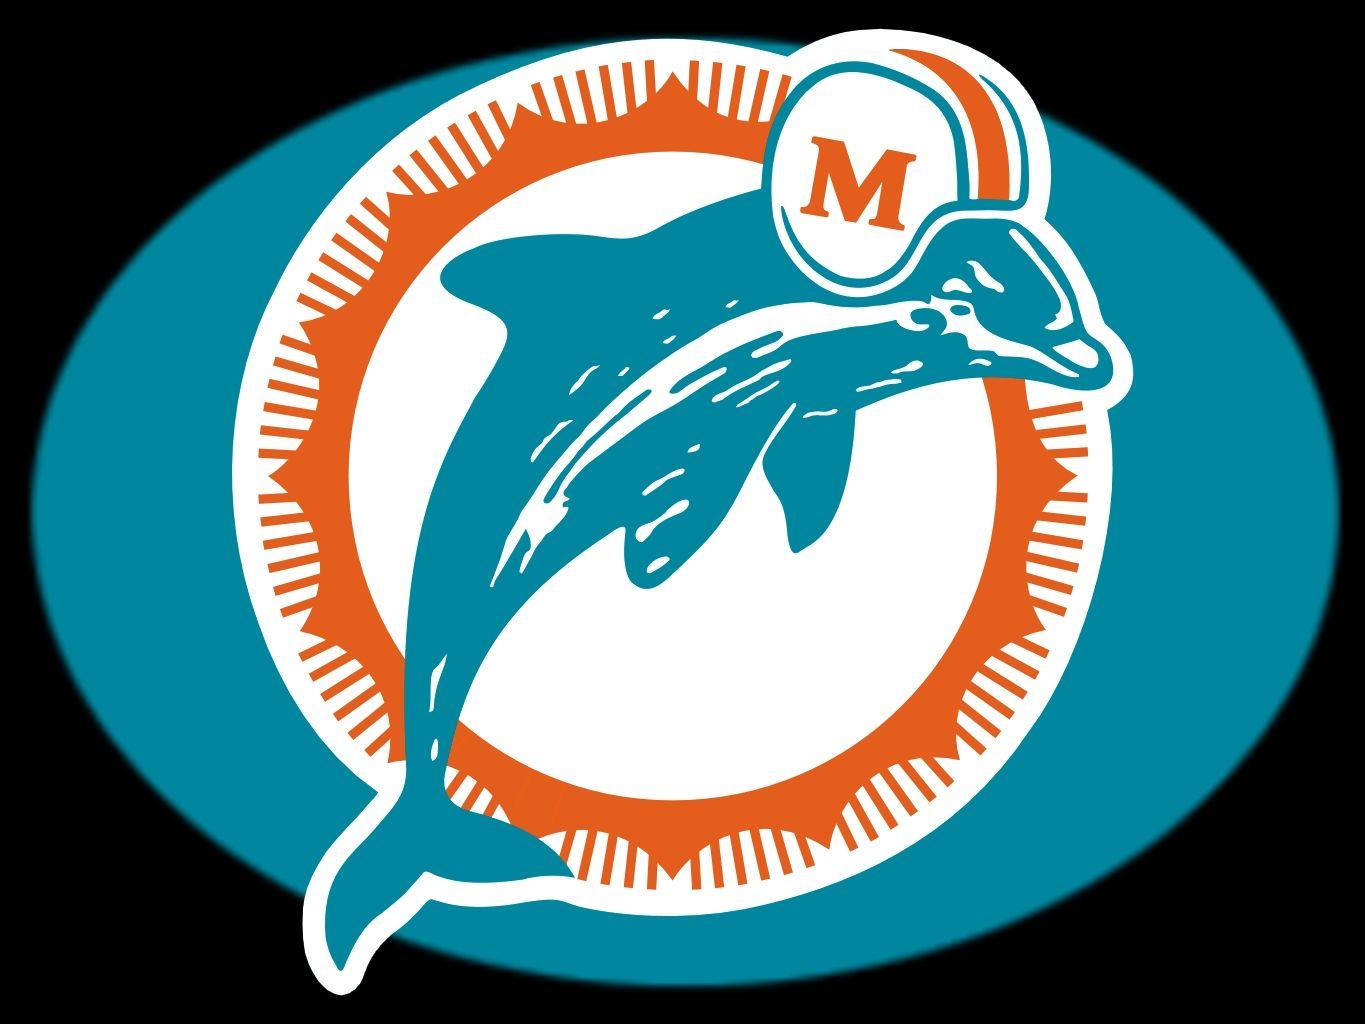 Miami Dolphins Logo - Miami Dolphins at 50: Logos